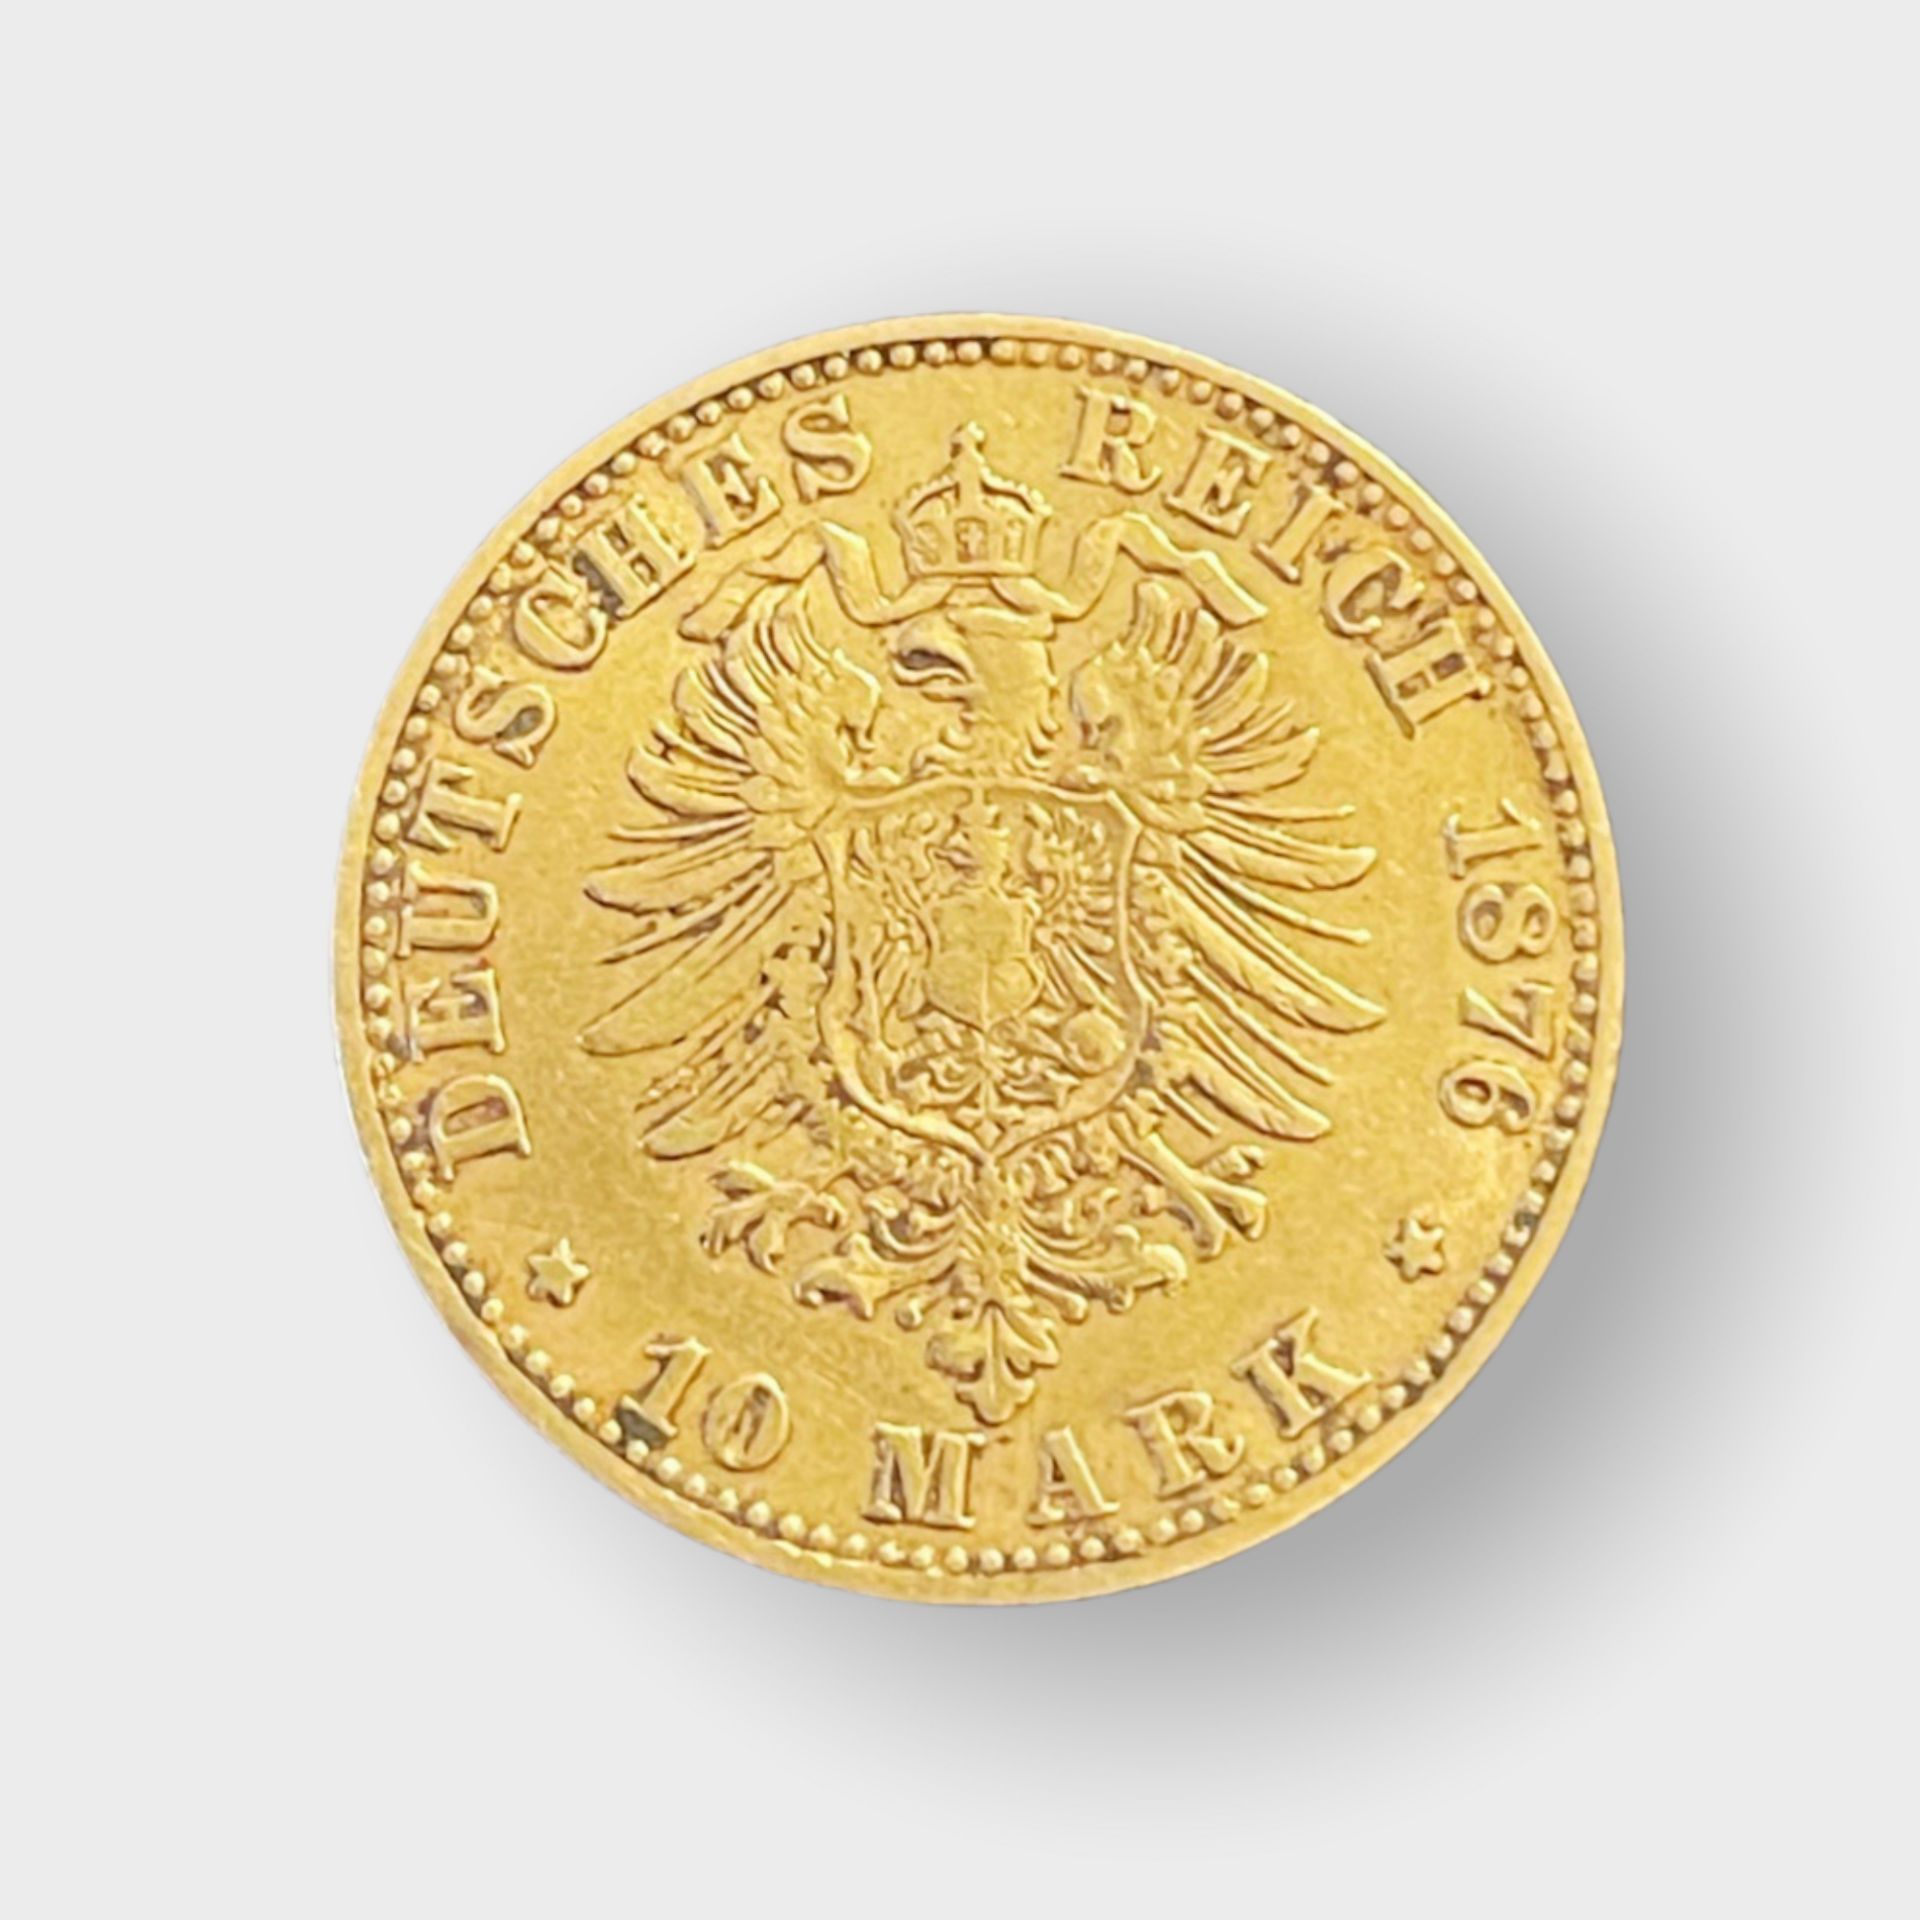 Goldmünze, Deutsches Reich 10 Mark - Image 2 of 2